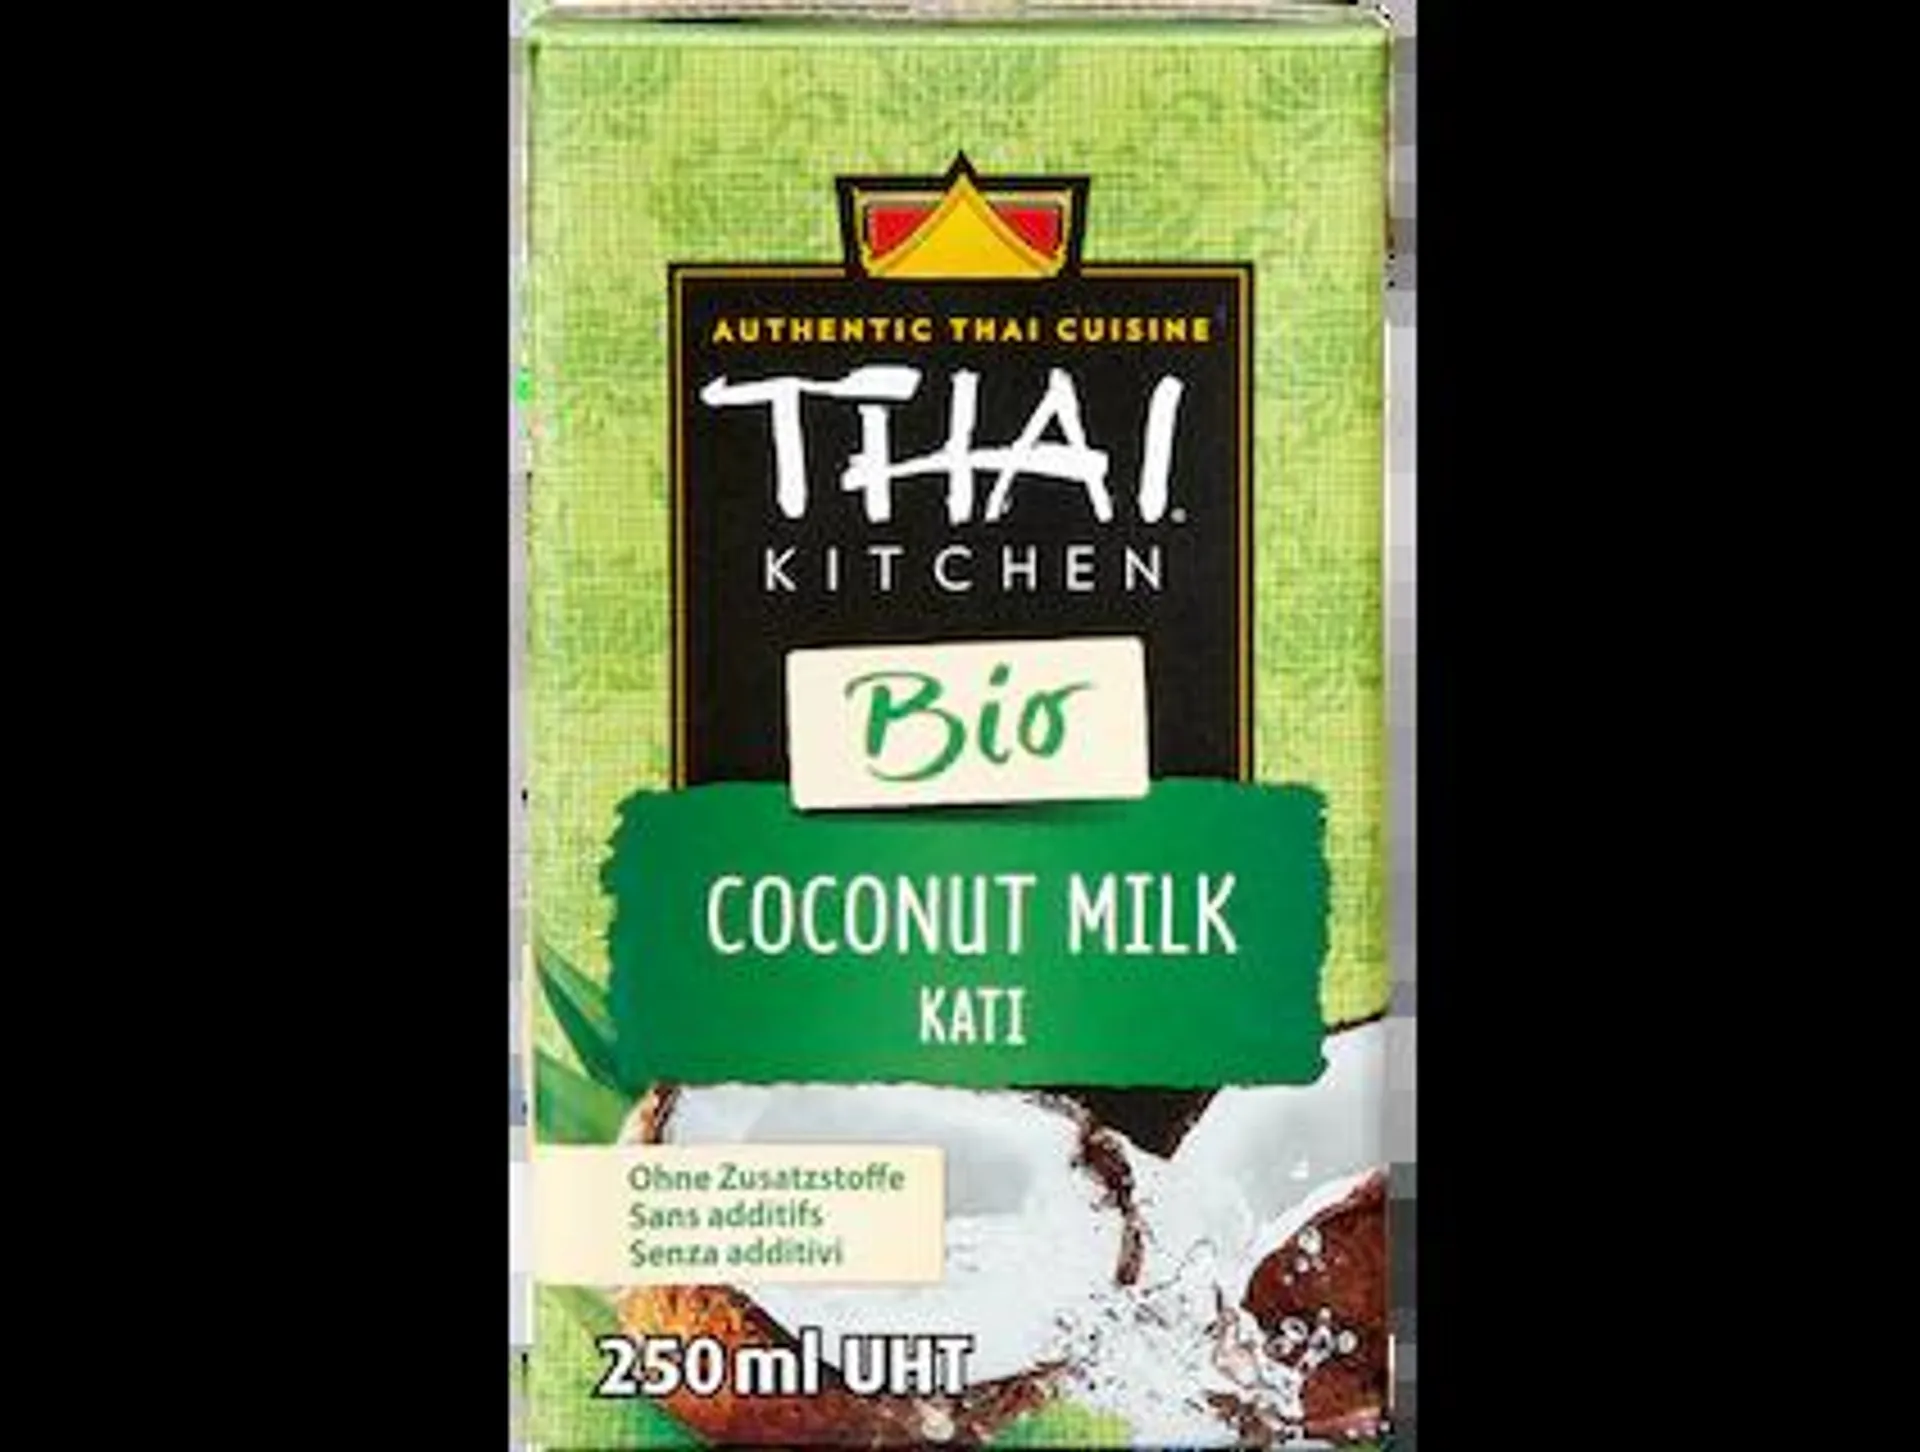 Thai Kitchen Bio Coconut Milk